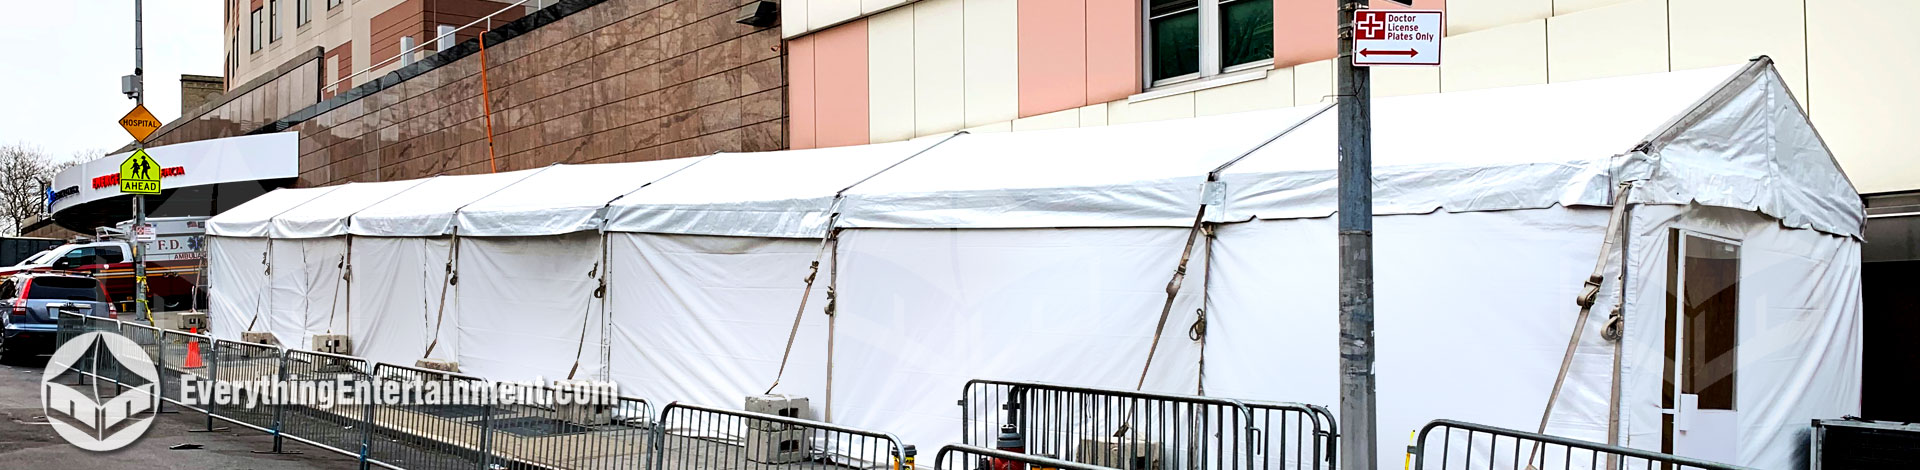 very long tent setup on sidewalk outside hospital for virus testing